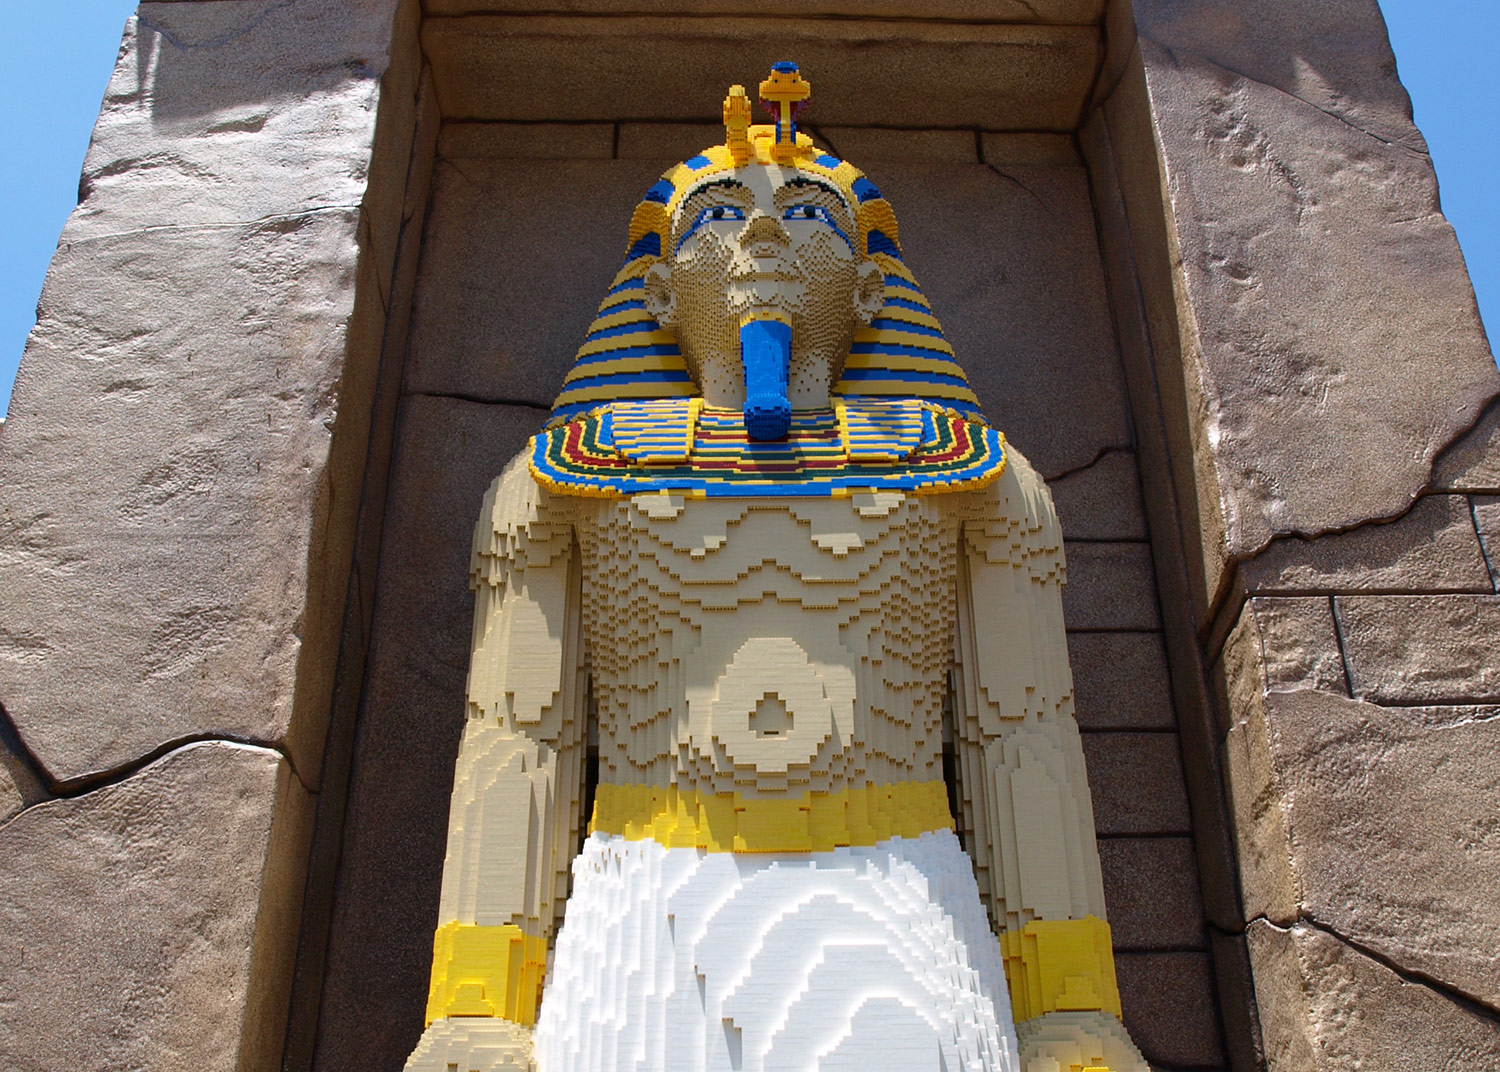 LEGO Pharaoh LEGOLAND 